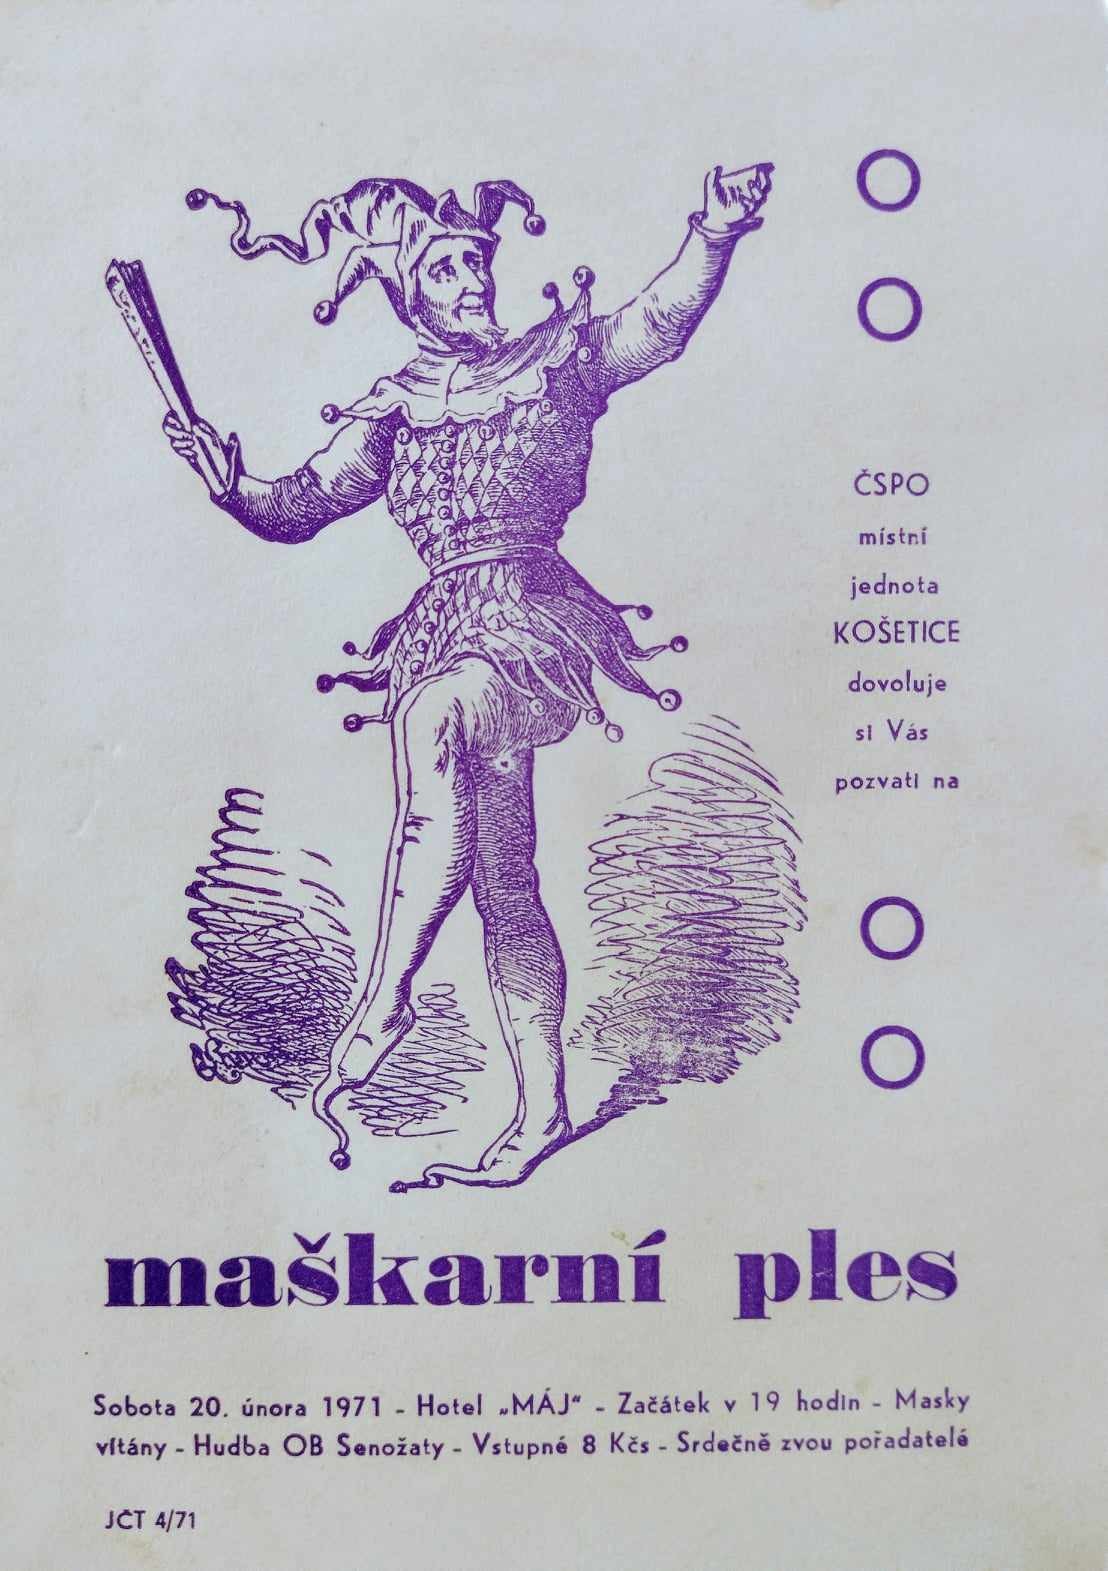 20.unora-1971_pozvanka-na-maskarni-ples.jpg